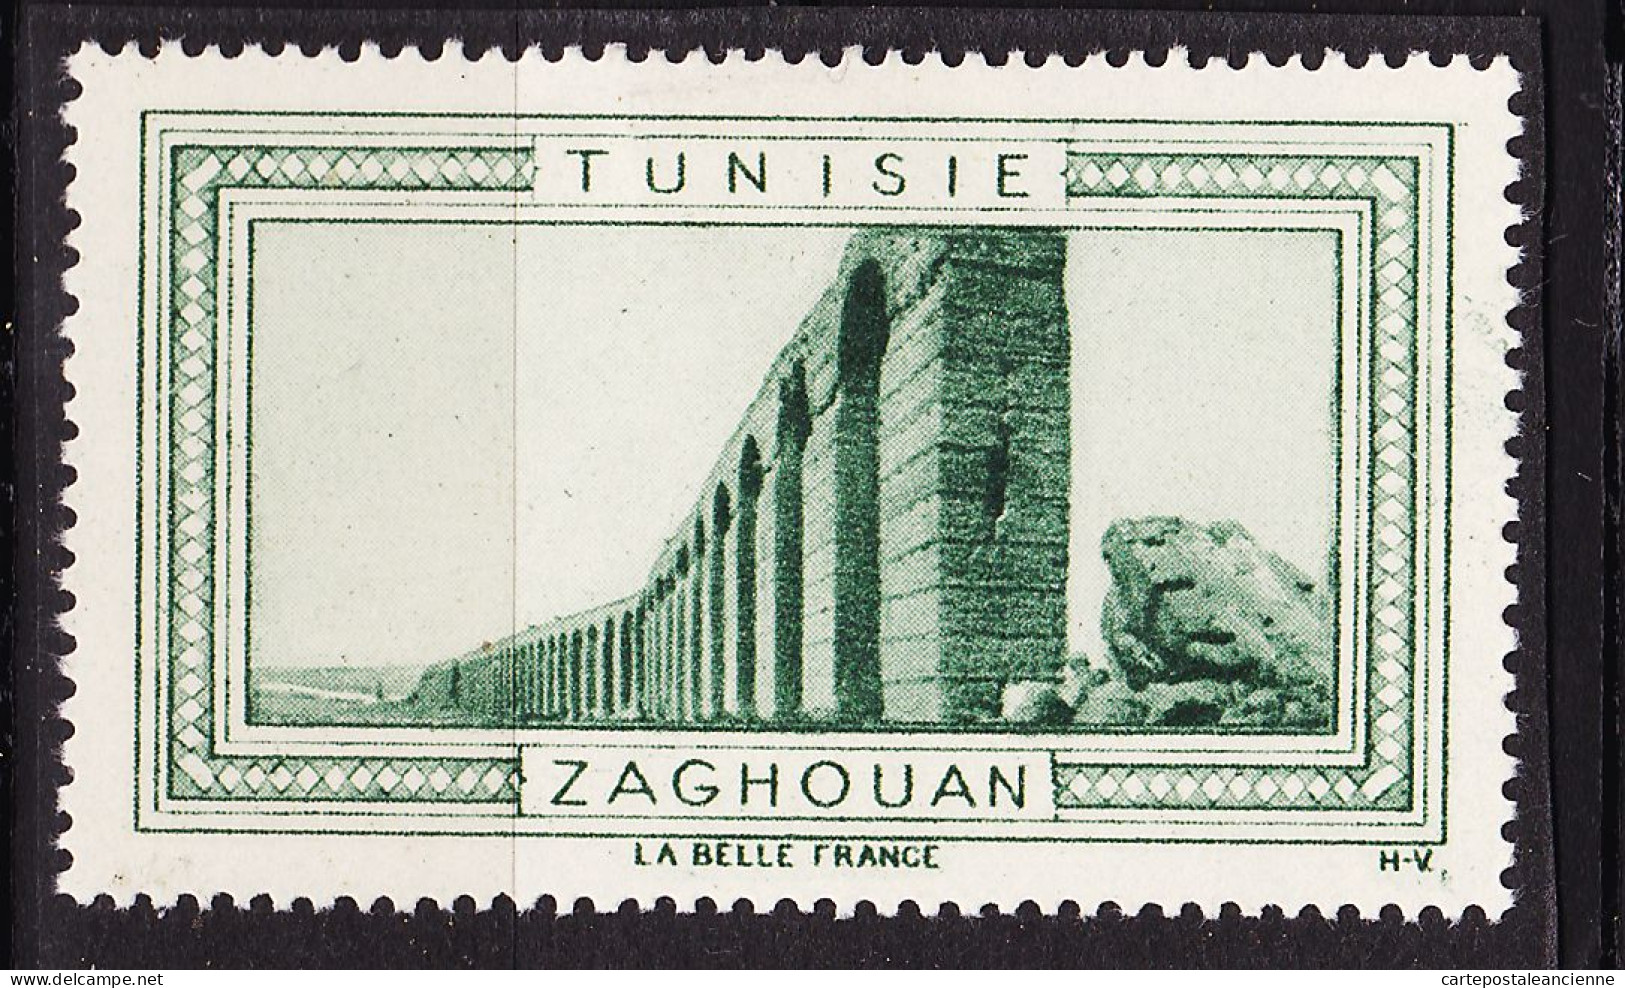 13011 ● ZAGHOUAN TUNISIE Vignette De Collection LA BELLE FRANCE 1925s H-V Helio VAUGIRARD PARIS Erinnophilie - Turismo (Viñetas)